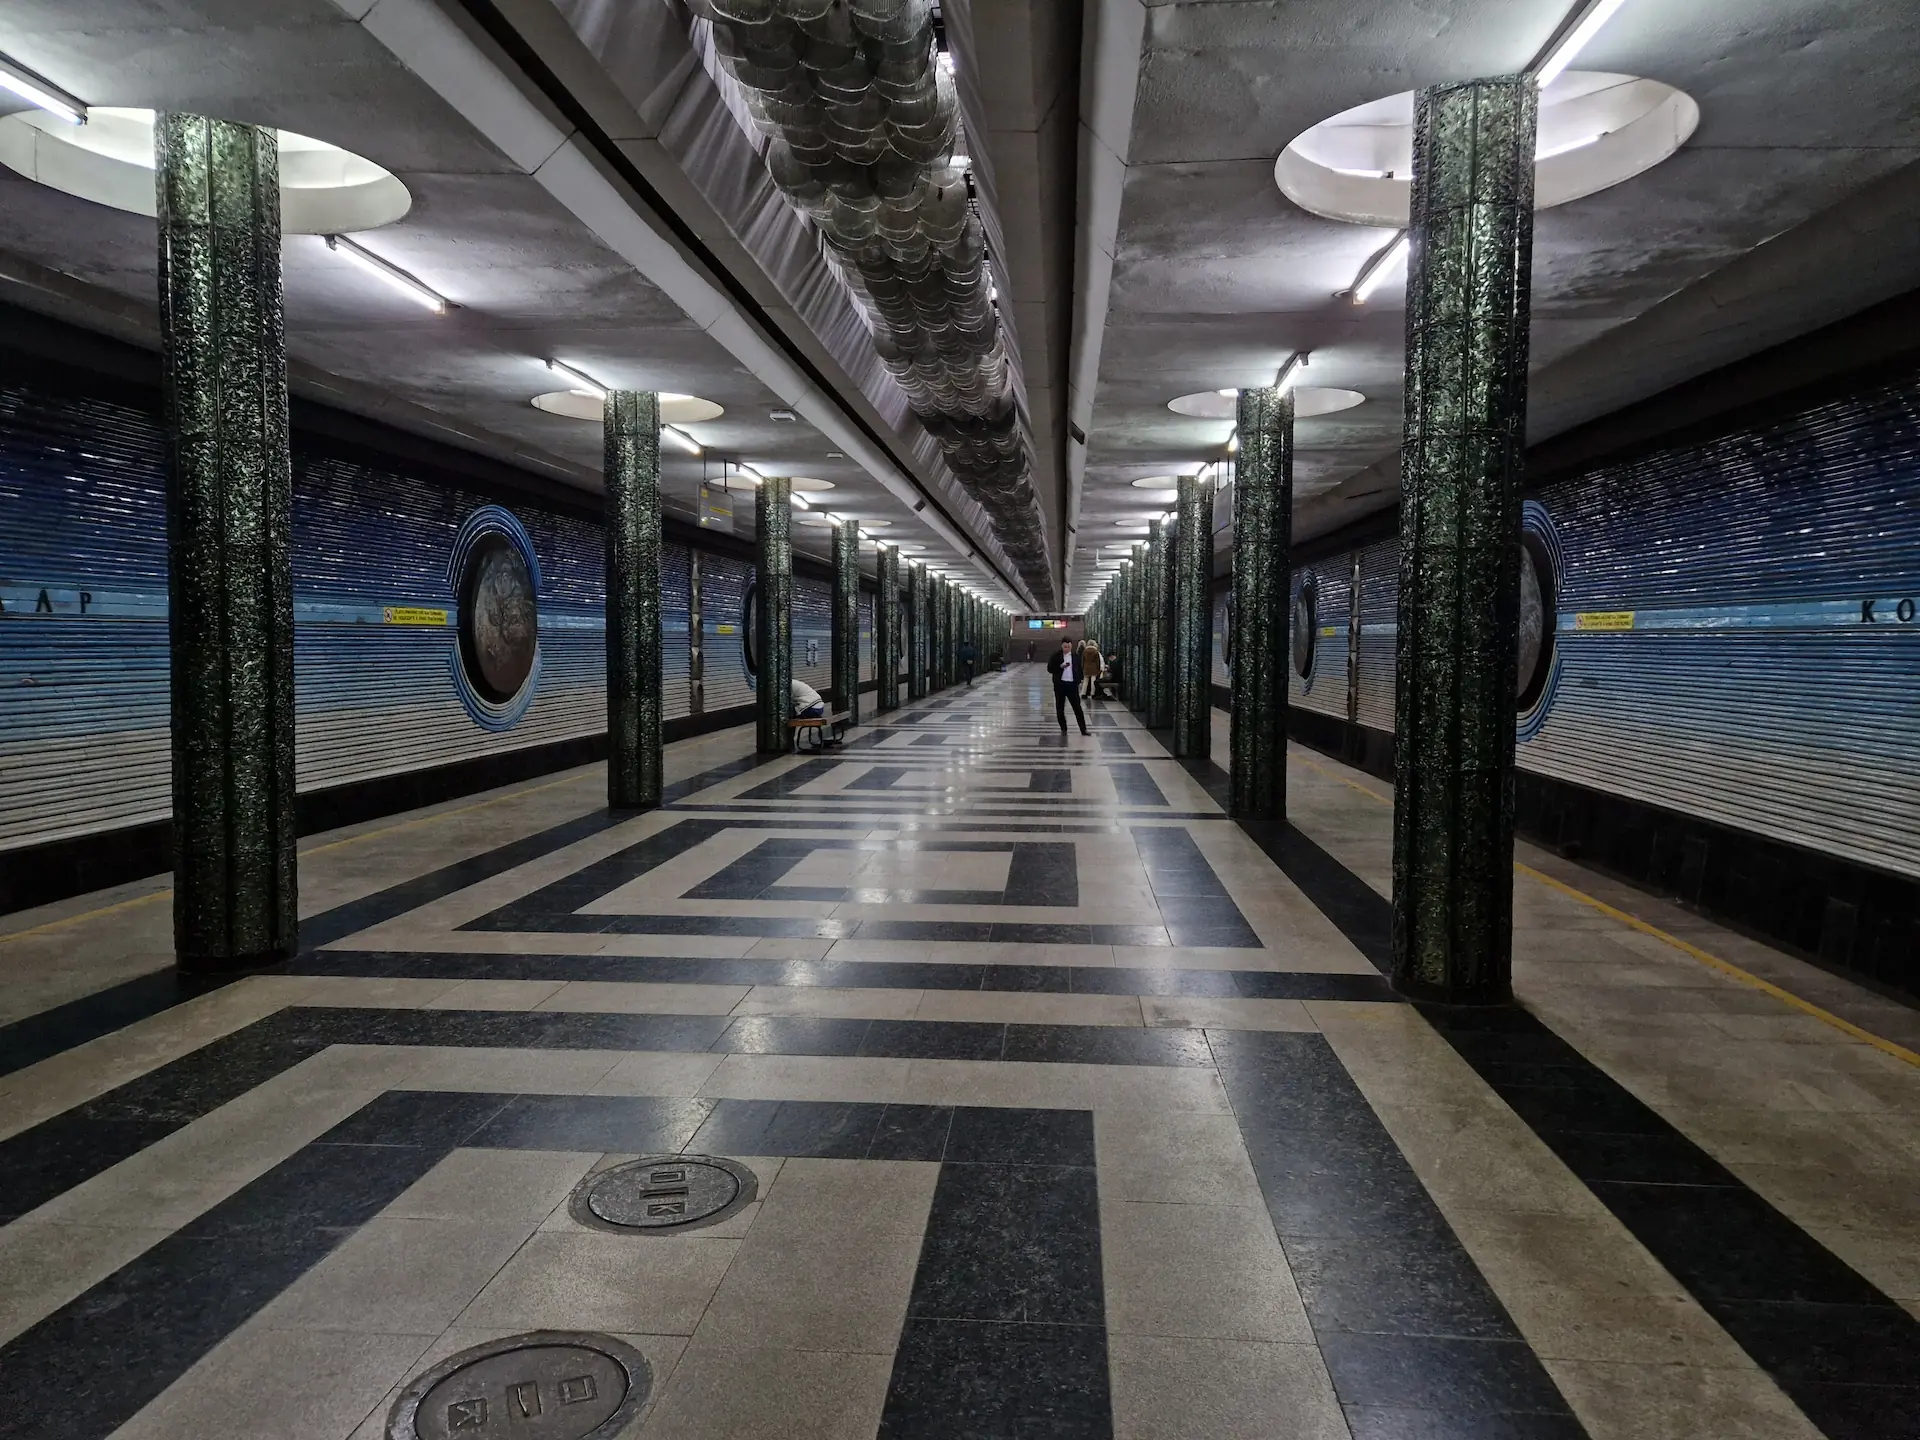 Une station de métro dans des tons bleu foncé, représentant la voie lactée